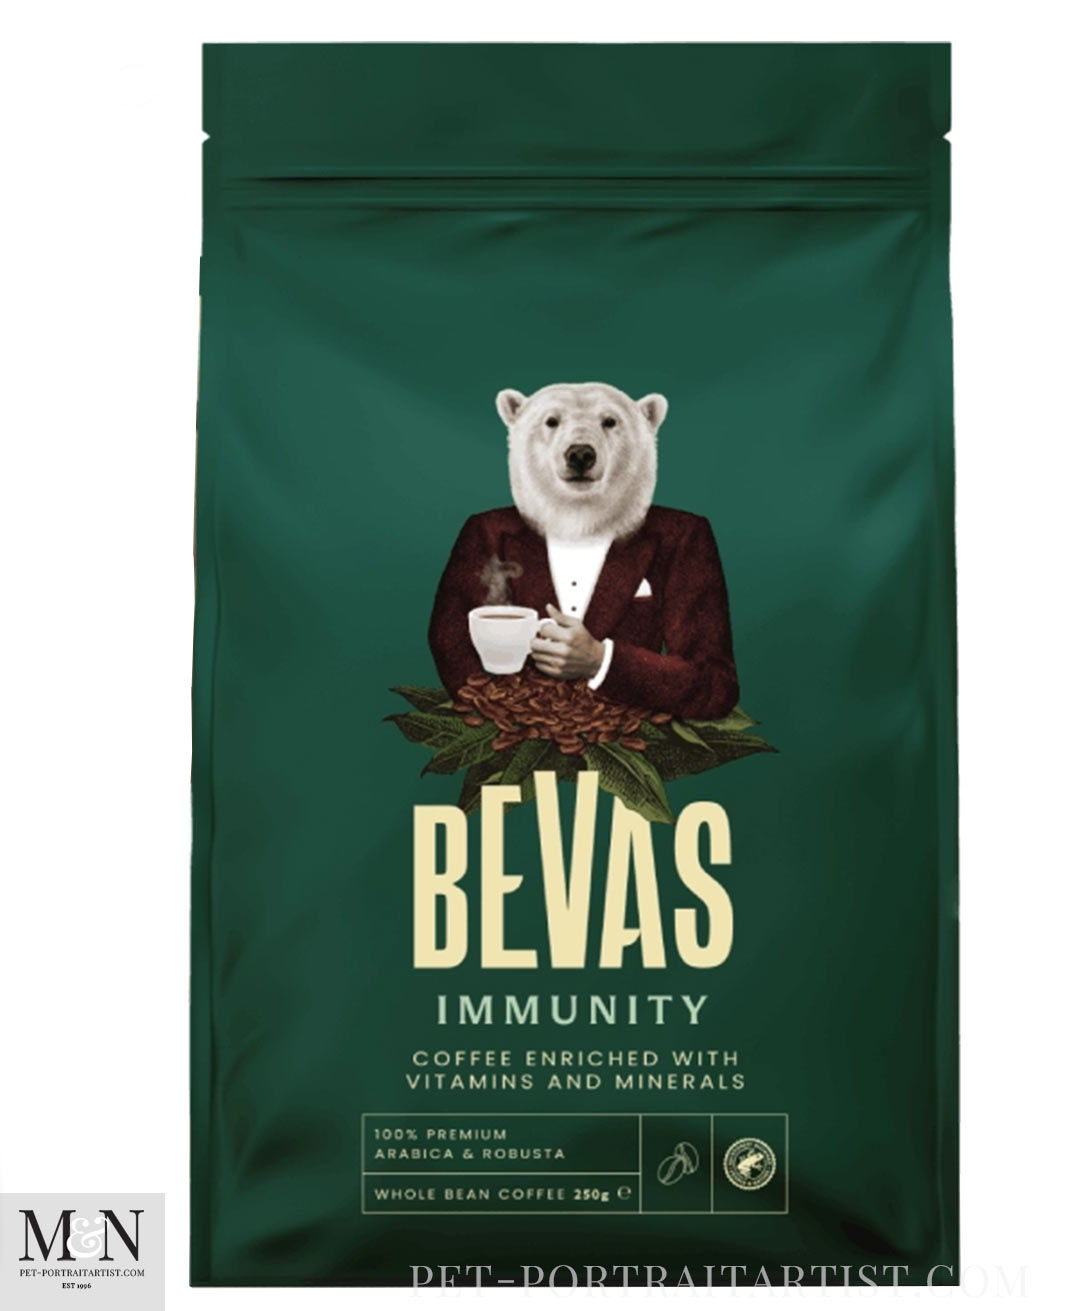 Polar Bear Immunity Coffee